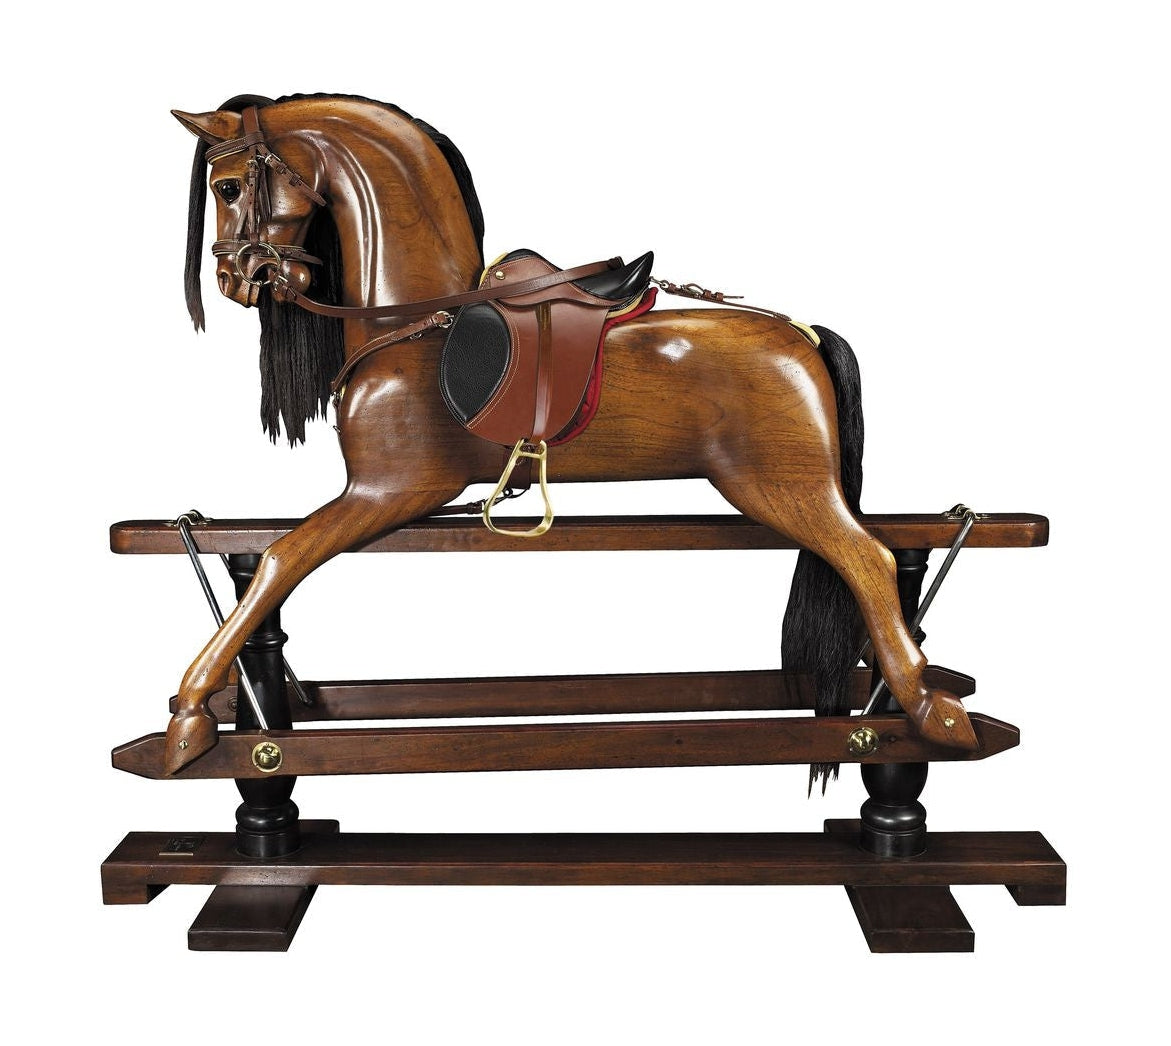 Modelli autentici replica del cavallo a dondolo vittoriano, finitura